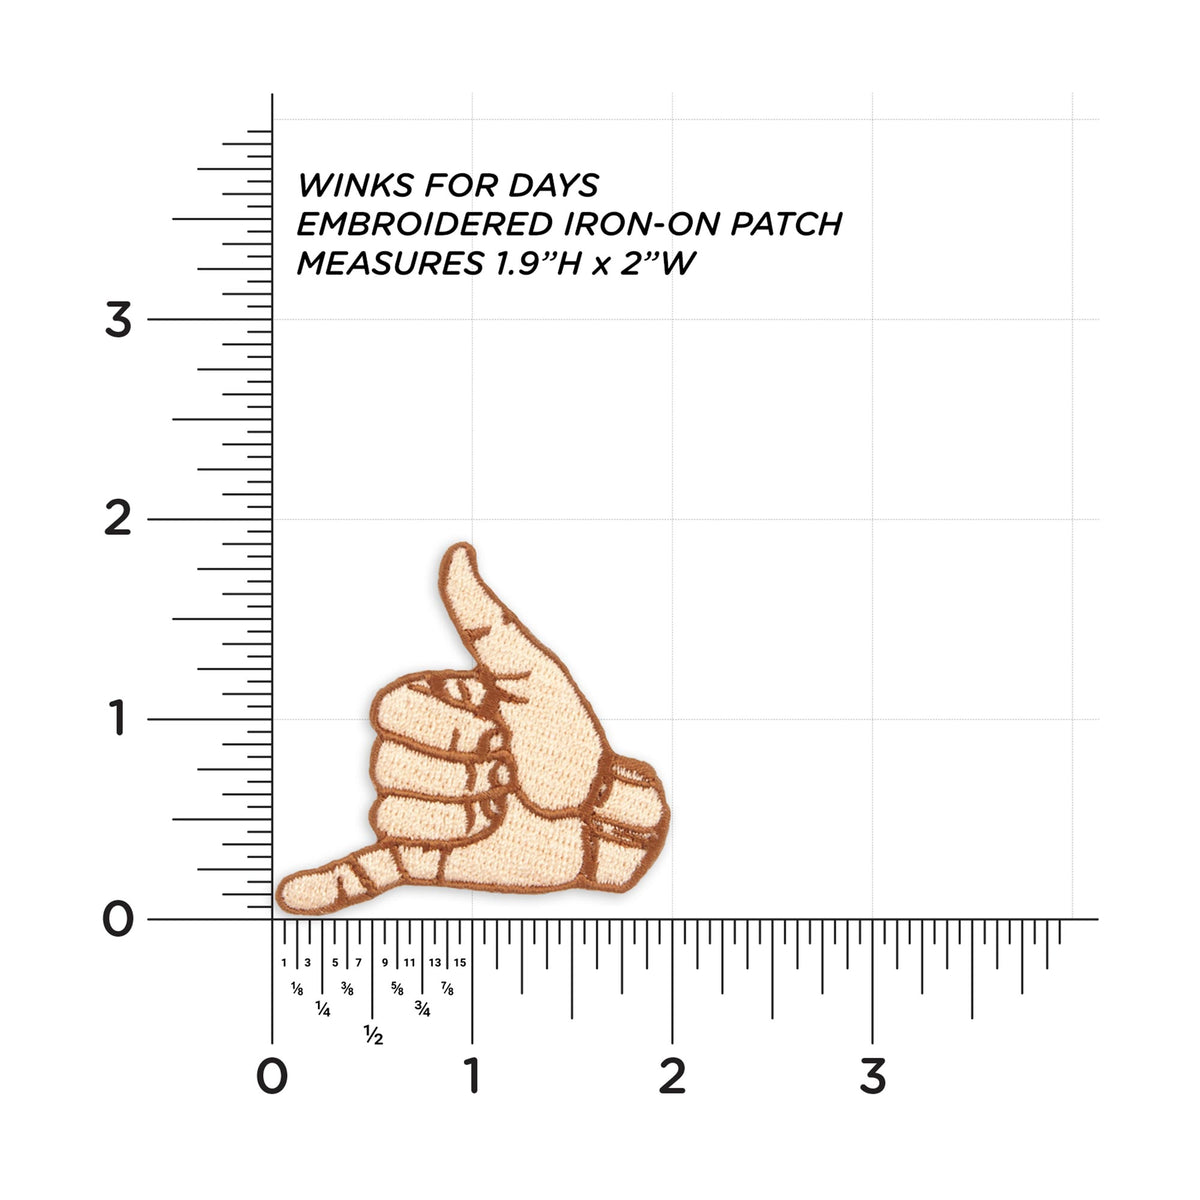 Shaka Hand measurements